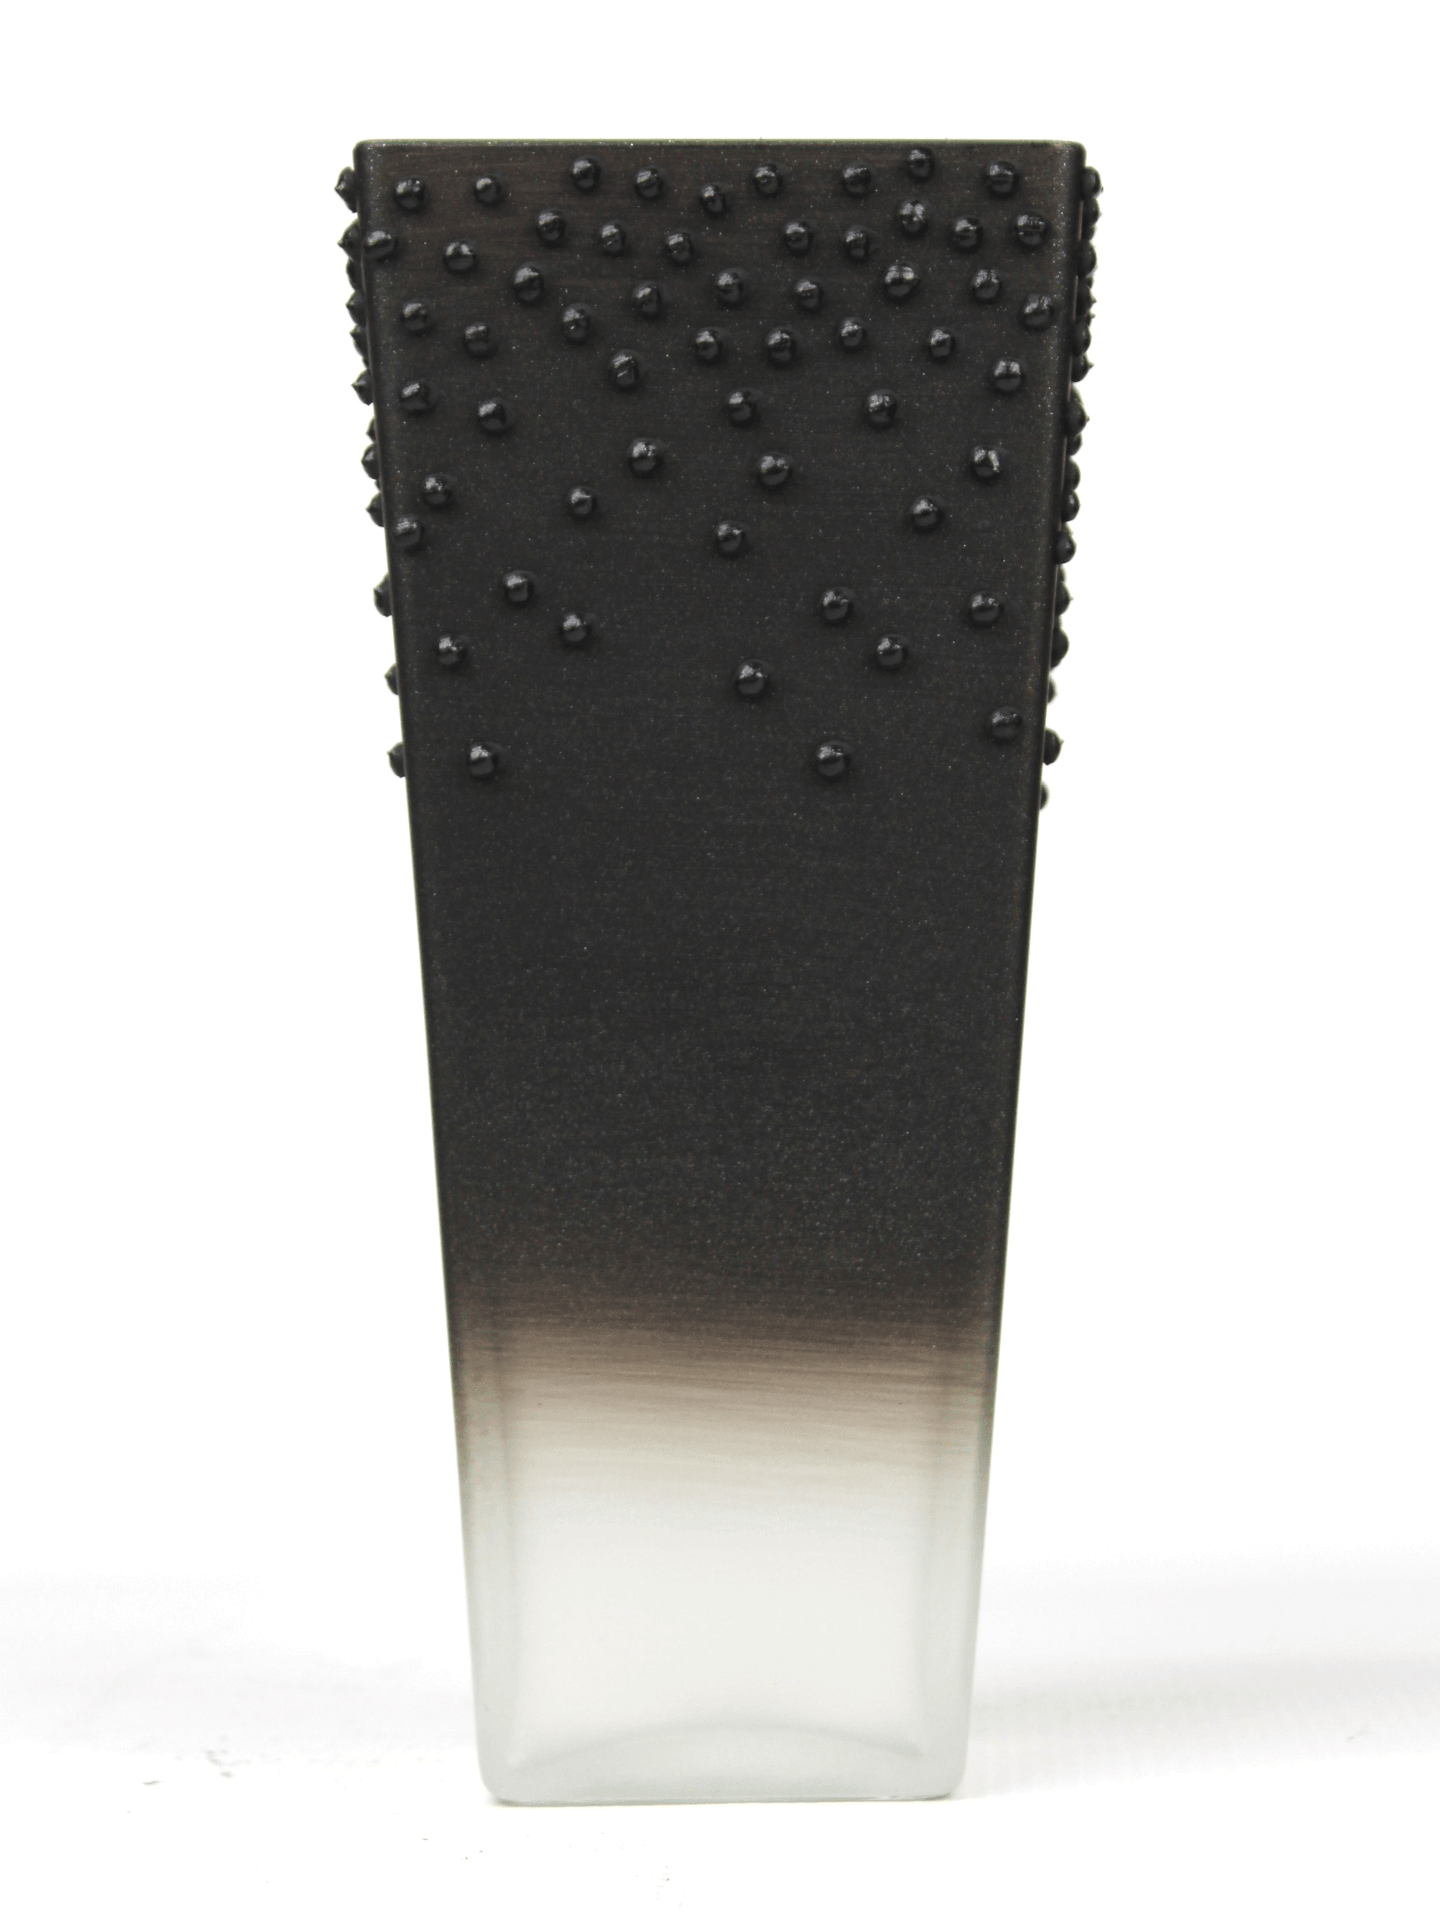 table black art decorative glass vase 7011/250/sh350.4  